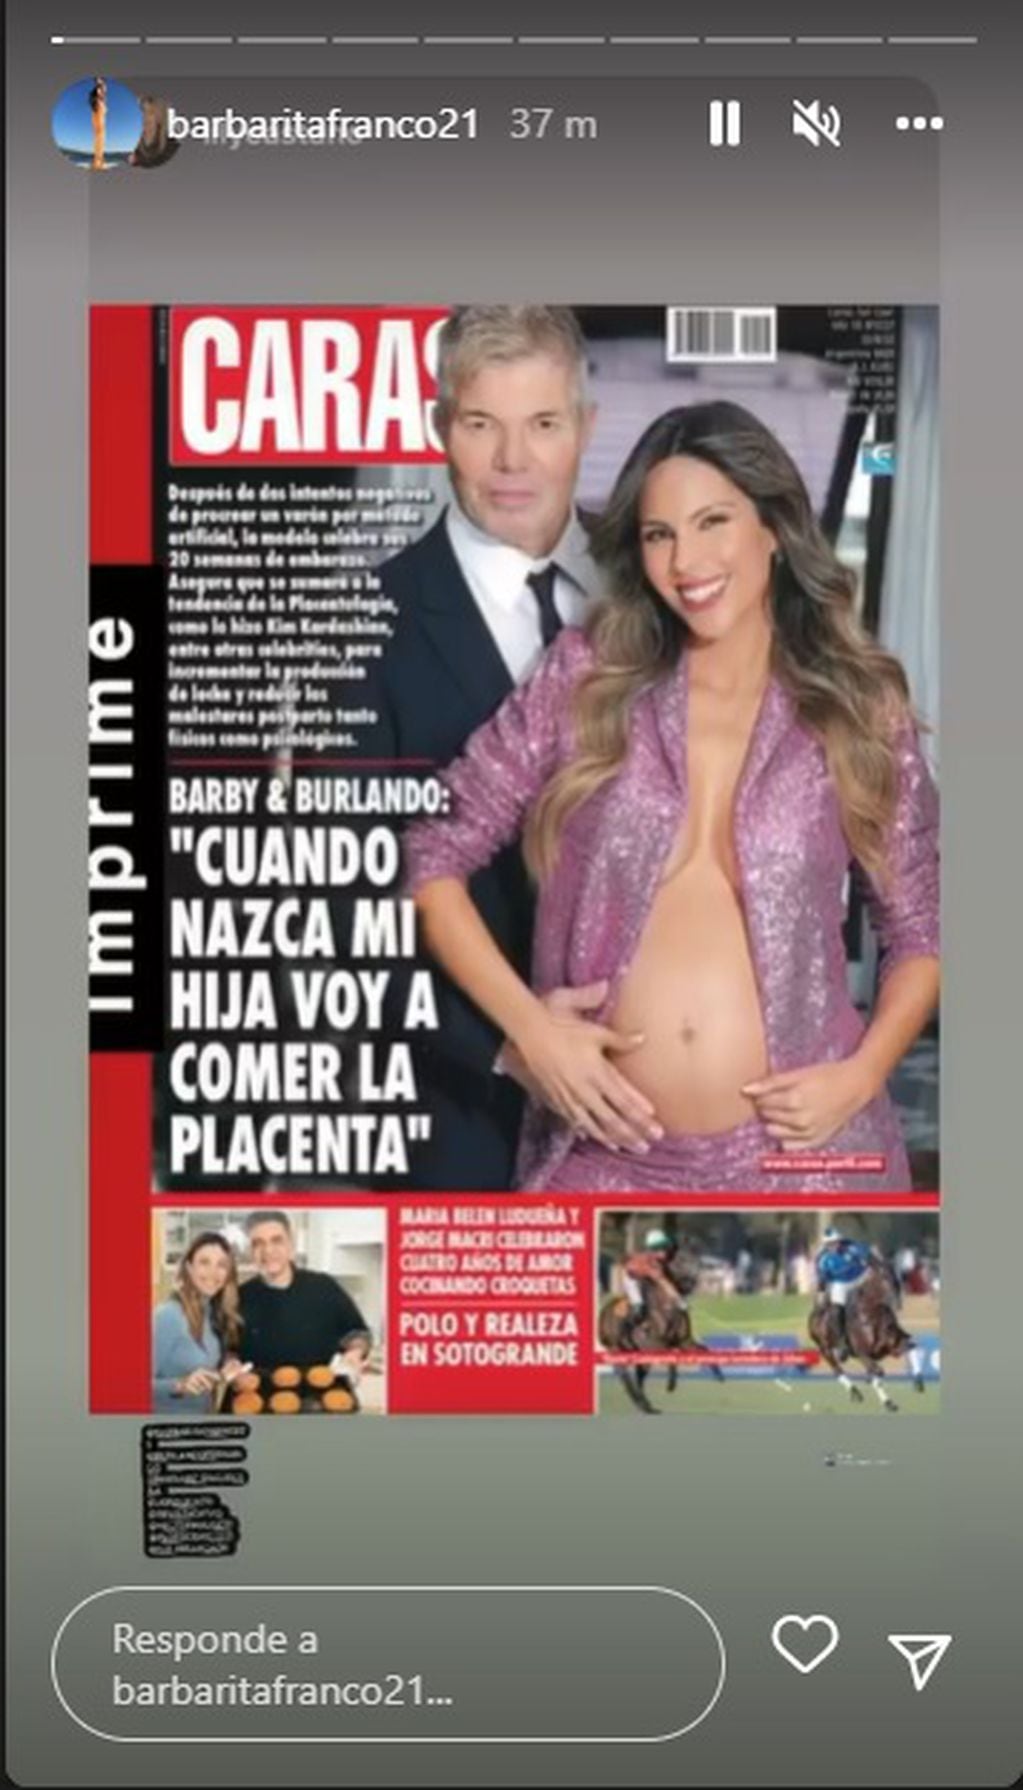 Barby Franco y Fernando Burlando anunciaron el sexo de su bebé